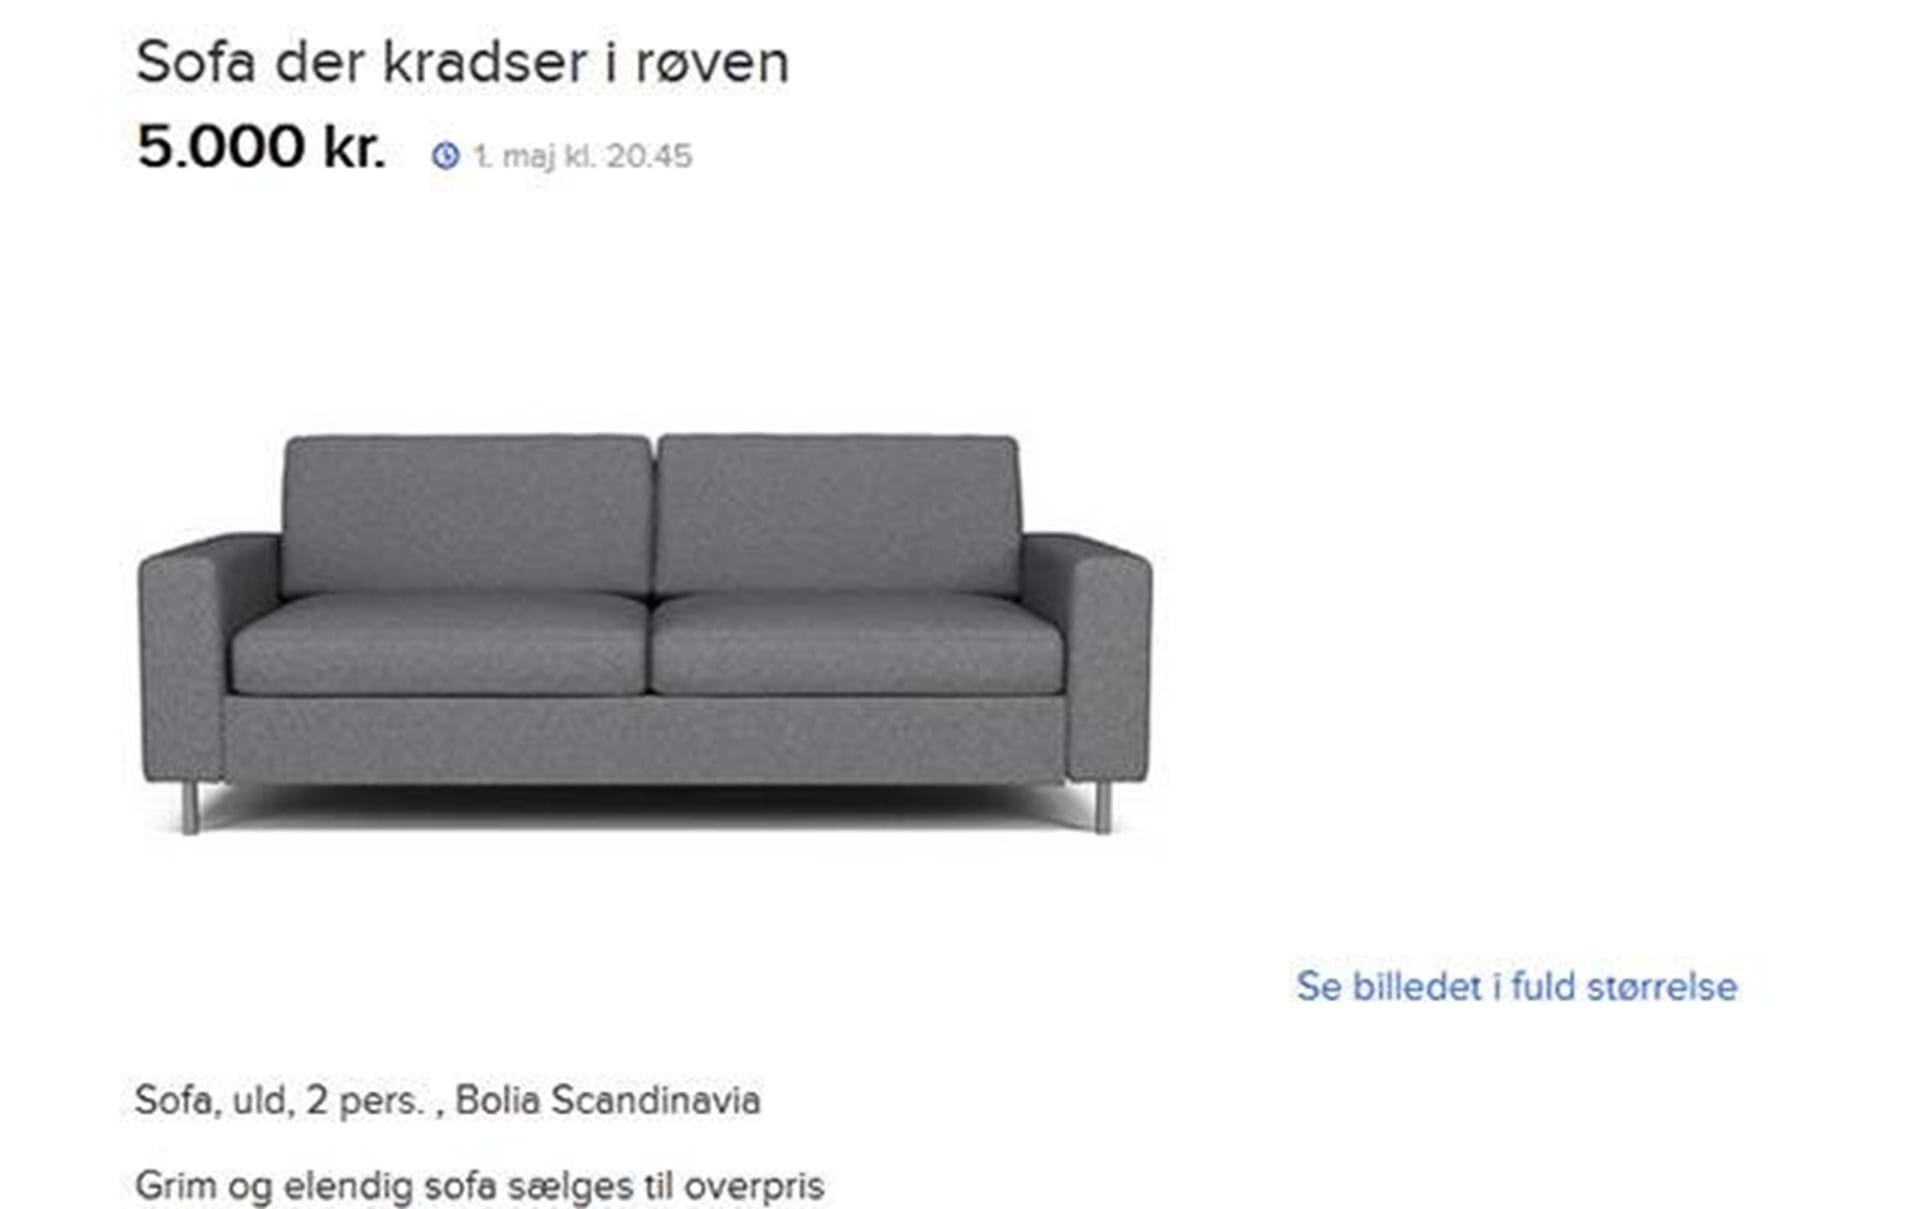 Blive ved Ledig Misbrug Røvkradsende sofa'-sælger får svar fra møbelfirma - Euroman